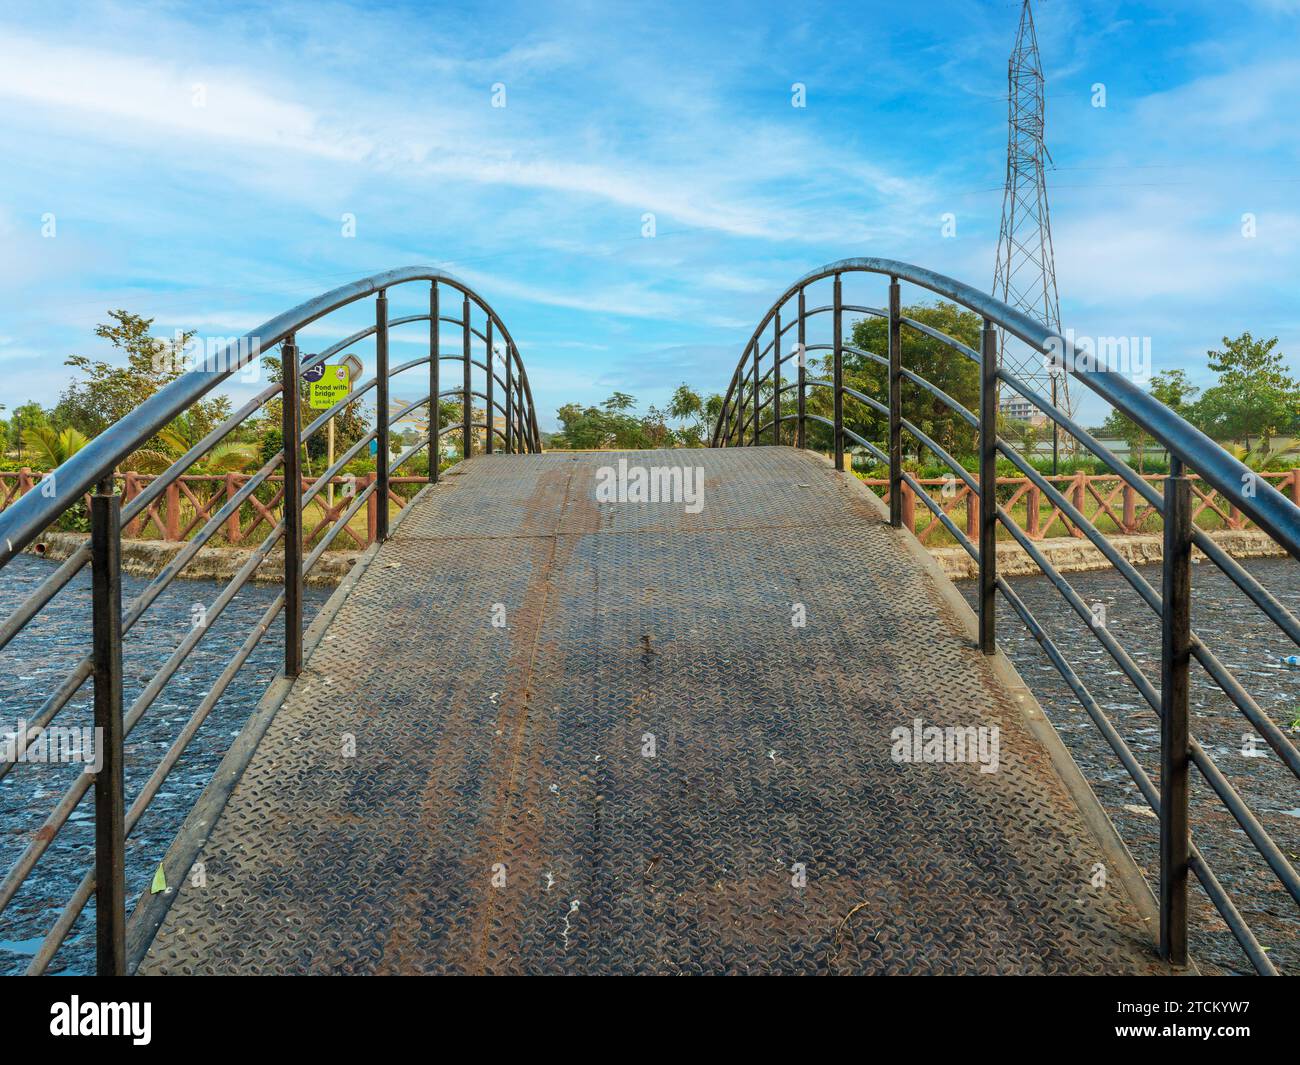 In questa foto stagni, giardino, ponte stagno con splendido ponte stagno. Splendide viste sulla natura e vibrazioni positive. Questa è una foto esclusiva per Alamy. Foto Stock